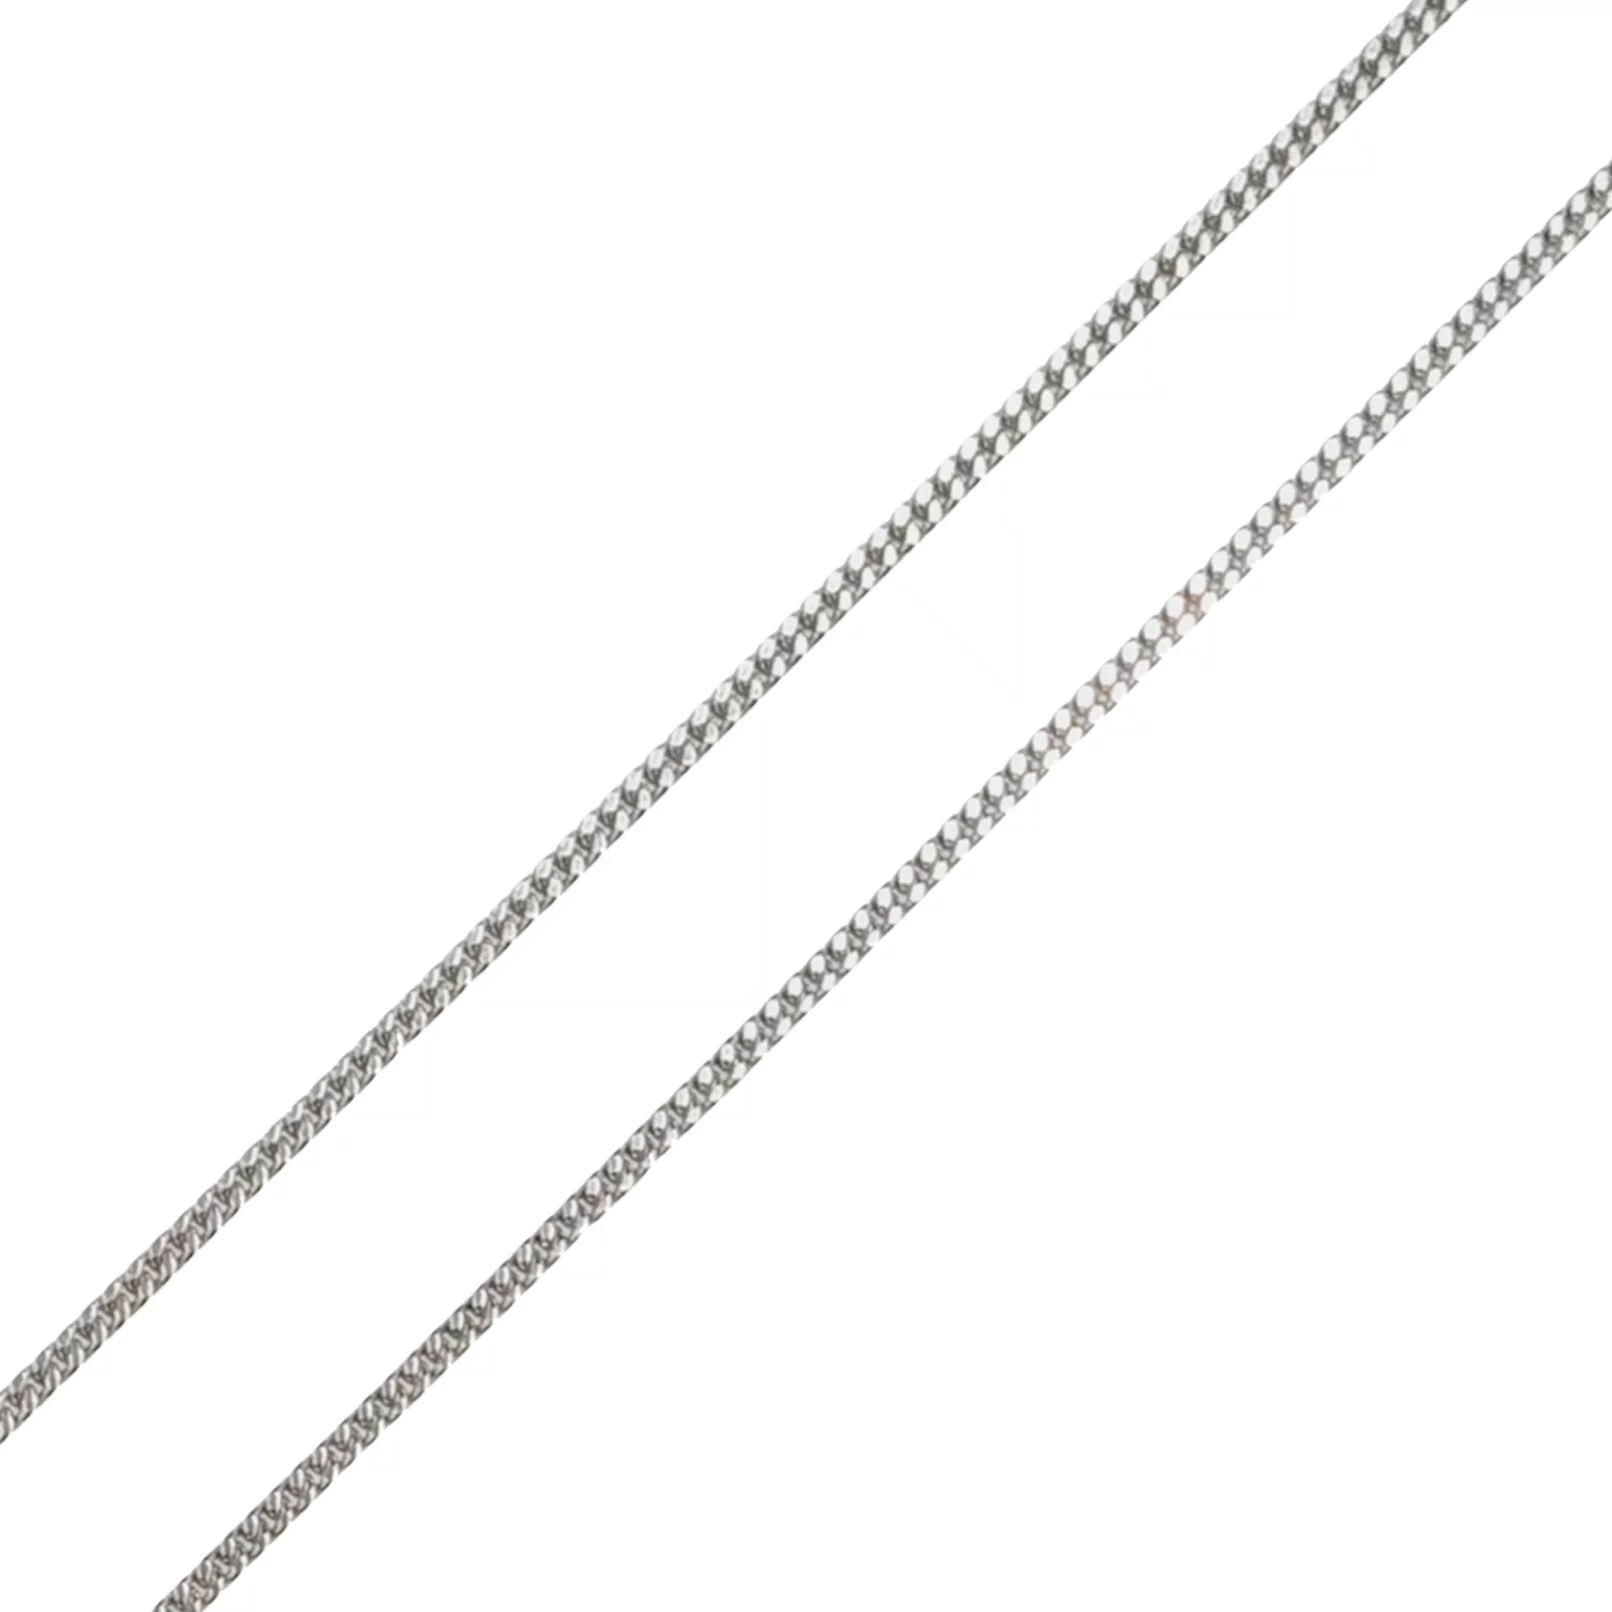 Цепочка из серебра Панцирное плетение. Артикул 7508/3-0304.80.2: цена, отзывы, фото – купить в интернет-магазине AURUM